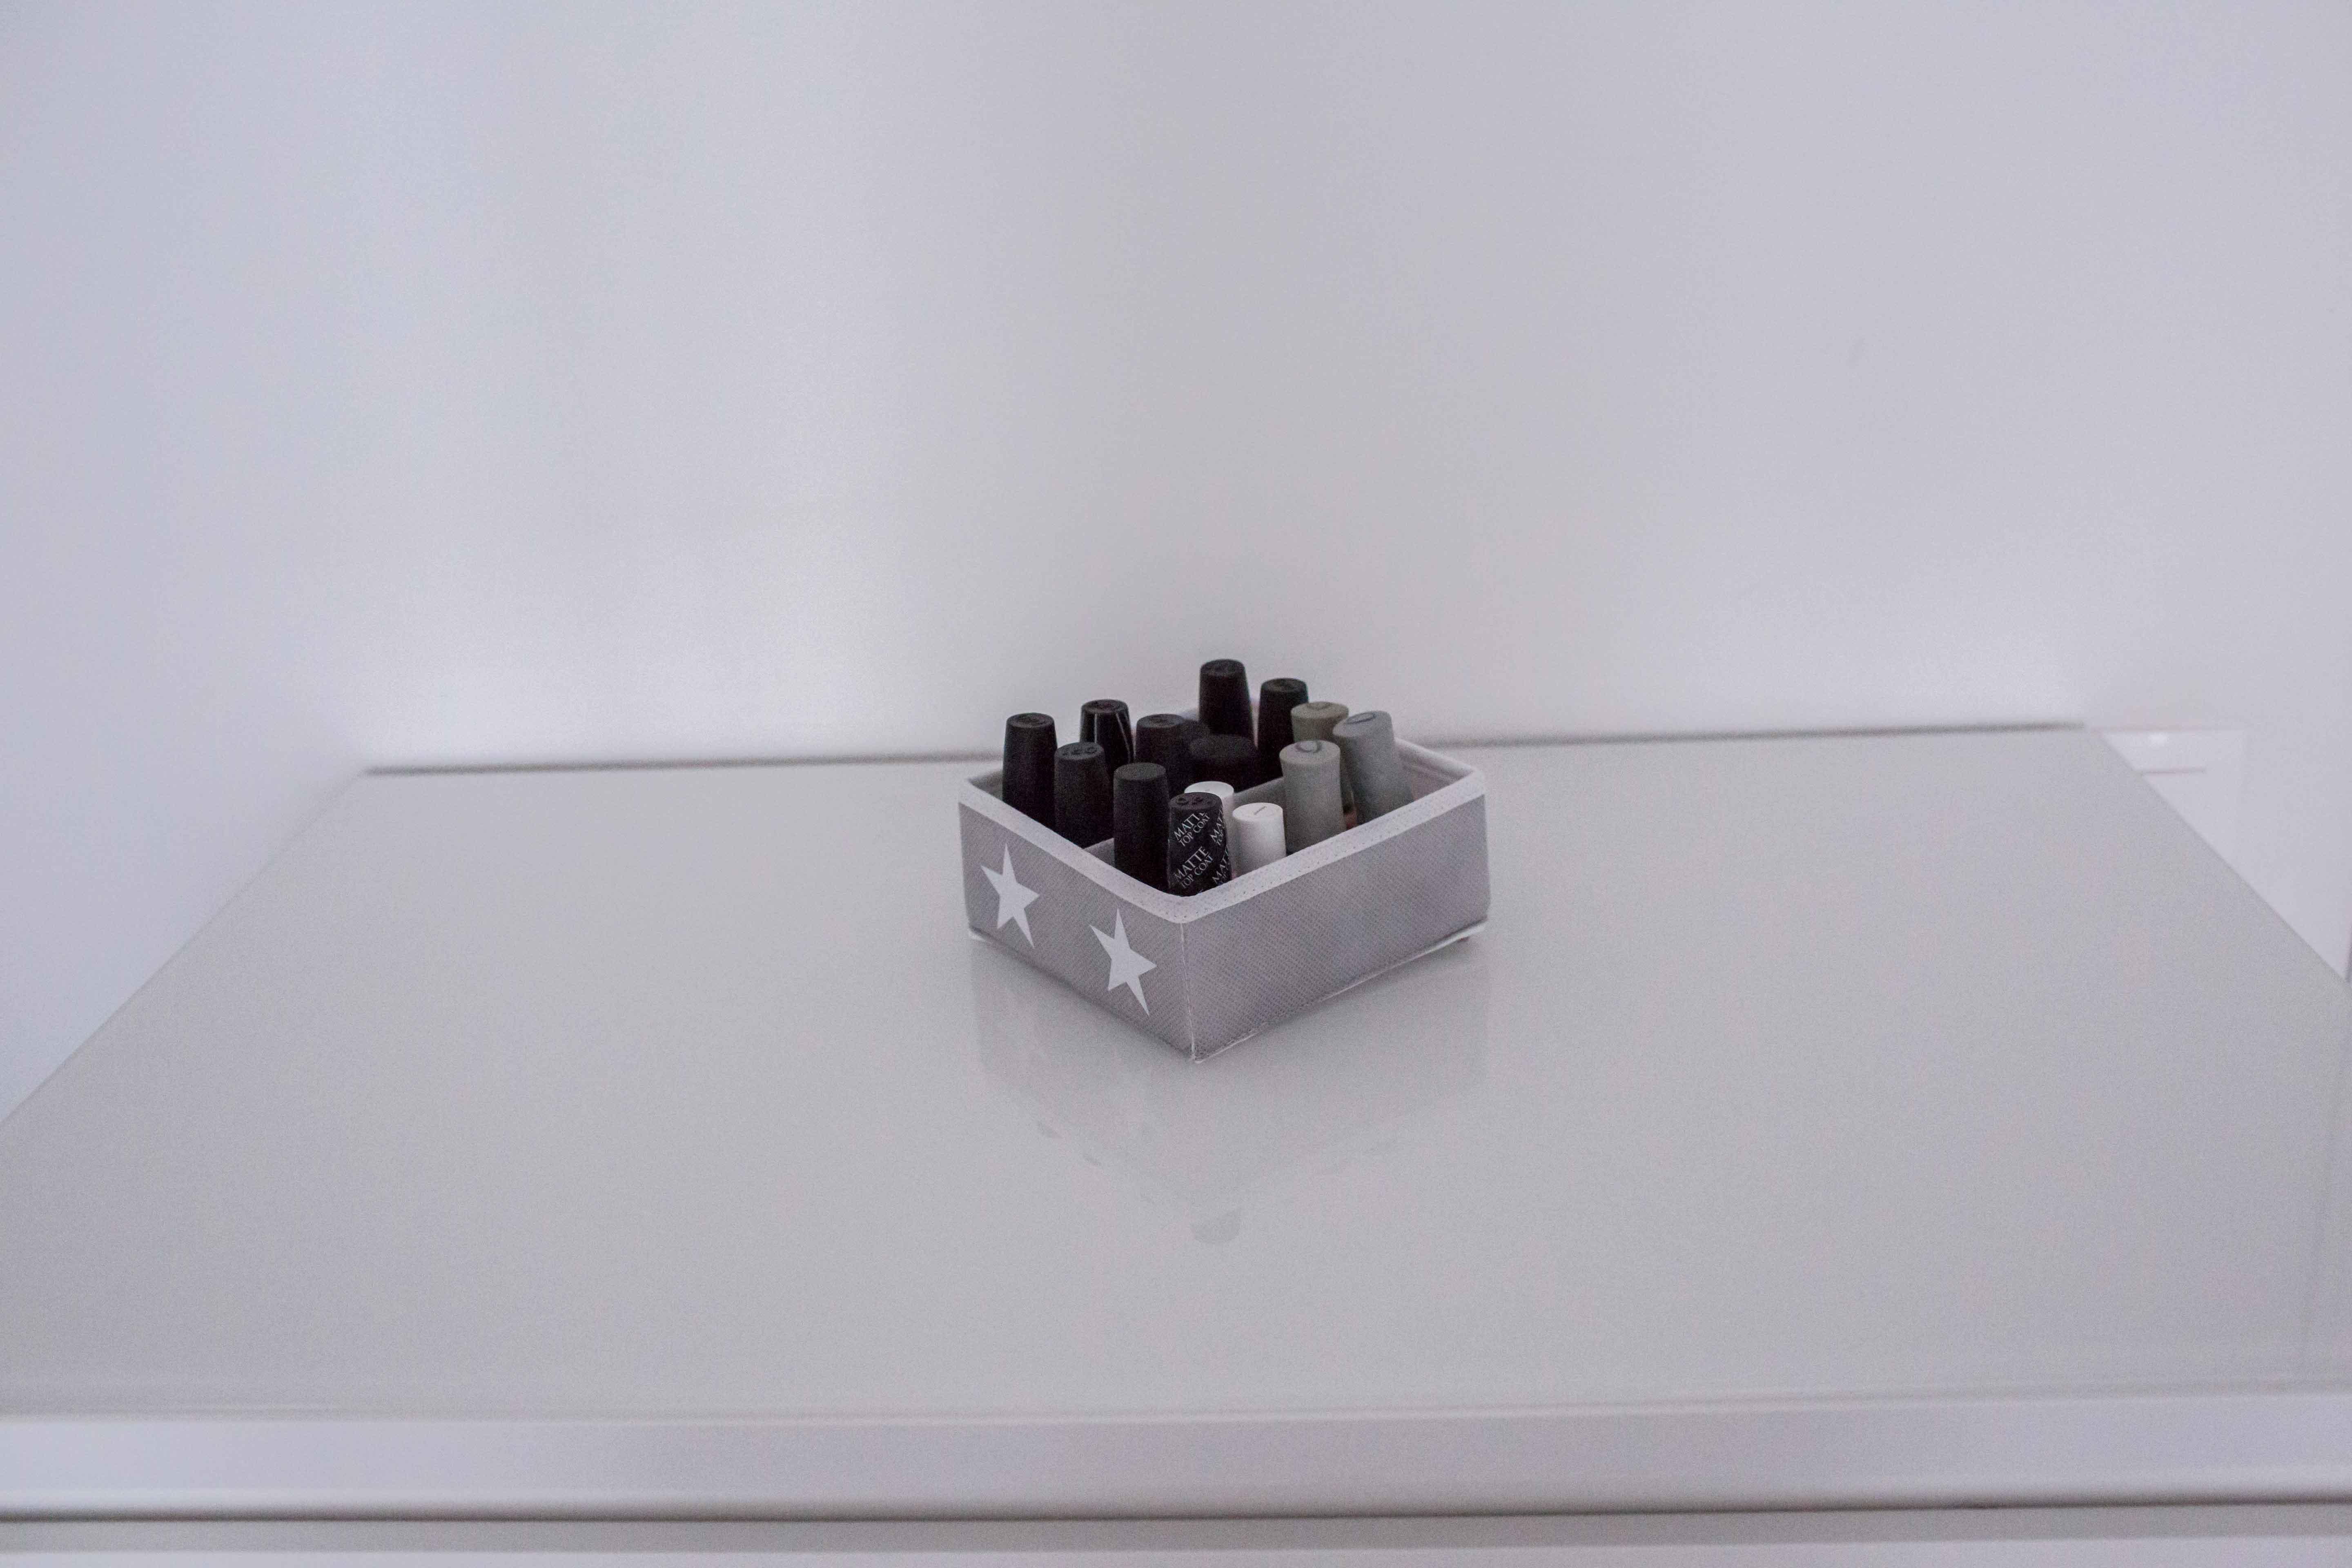 Органайзер для мелочей "Scandinavian" - коробки для хранения